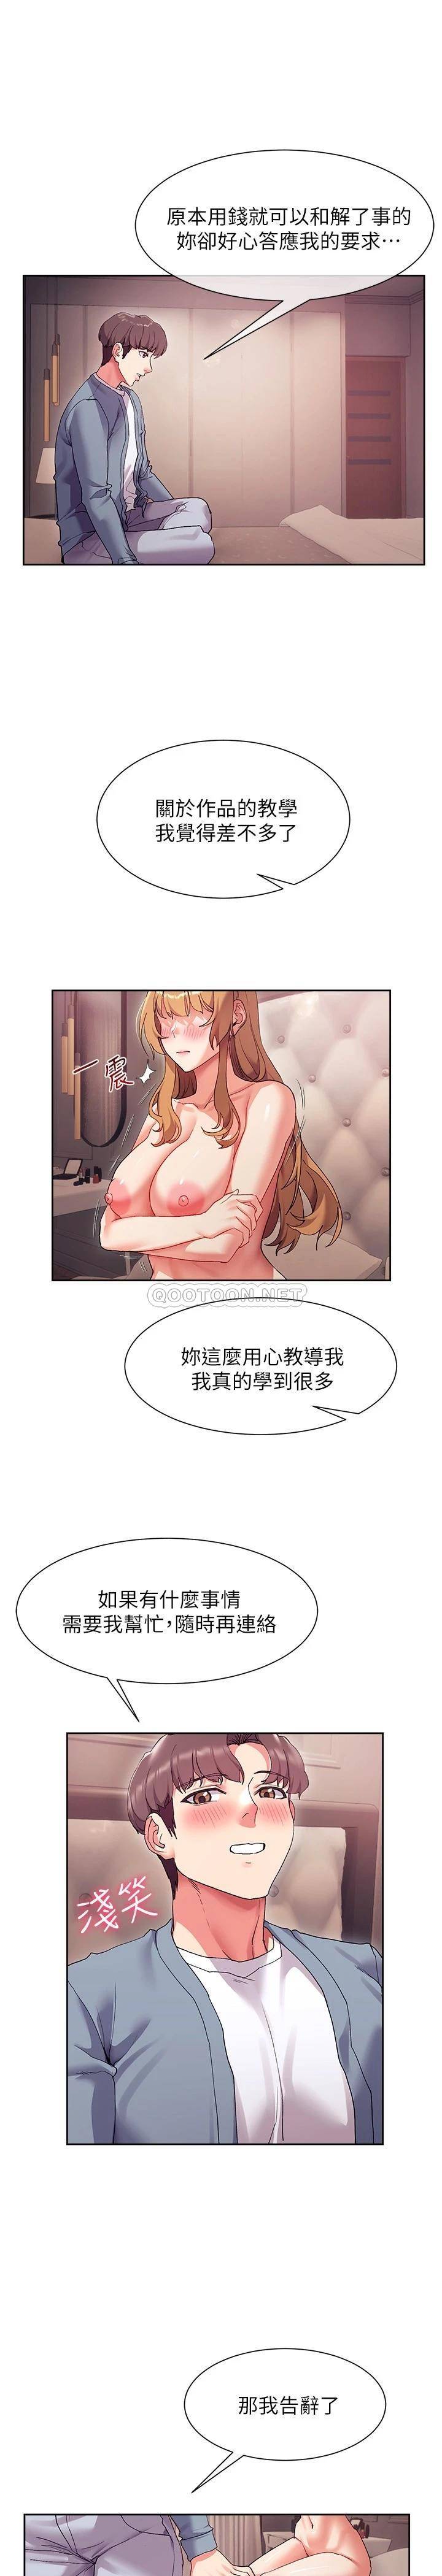 韩国污漫画 現上教學 第17话这就是舒服的感觉吗? 12